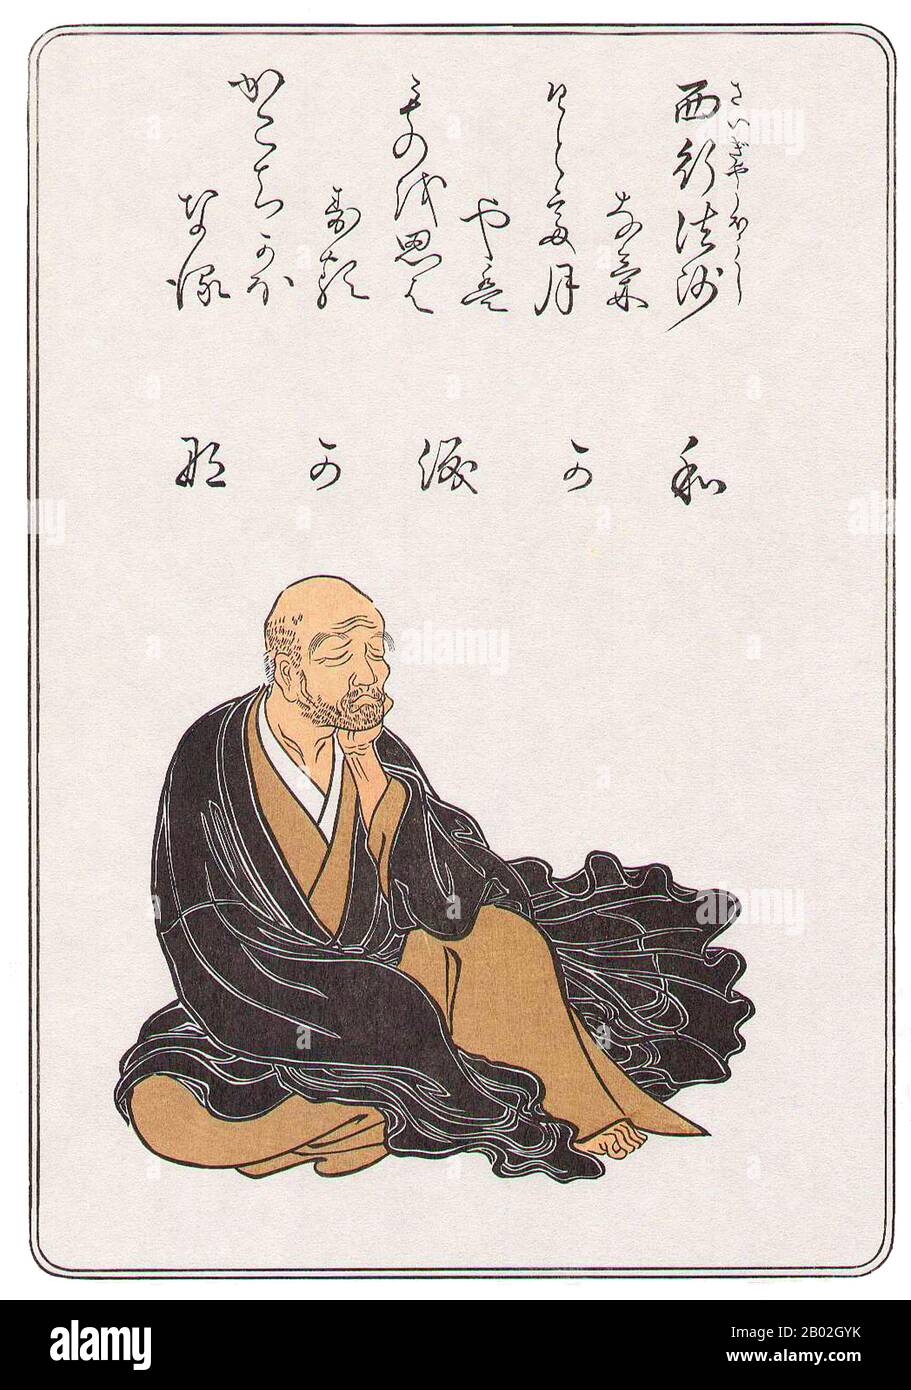 Satō Norikiyo (佐藤 義清) wurde in Kyoto in eine Adelsfamilie geboren und lebte während des traumatischen Machtübergangs zwischen den alten Hofadligen und den neuen Samurai-Kriegern. Nach dem Beginn des Alters von Mappō (1052) galt der Buddhismus als rückläufig und nicht mehr als wirksames Heilsmittel. Diese kulturellen Verschiebungen zu seinen Lebenszeit führten zu einem Gefühl der Melancholie in seiner Dichtung. Als Jugendlicher arbeitete er als Wächter für den pensionierten Kaiser Toba, aber 1140 im Alter von 22 Jahren, aus heute unbekannten Gründen, beendete er das weltliche Leben, um Mönch zu werden, und nahm den religiösen Namen En'i (円位) an. Später nahm er den Namen des Stiftes an, Stockfoto